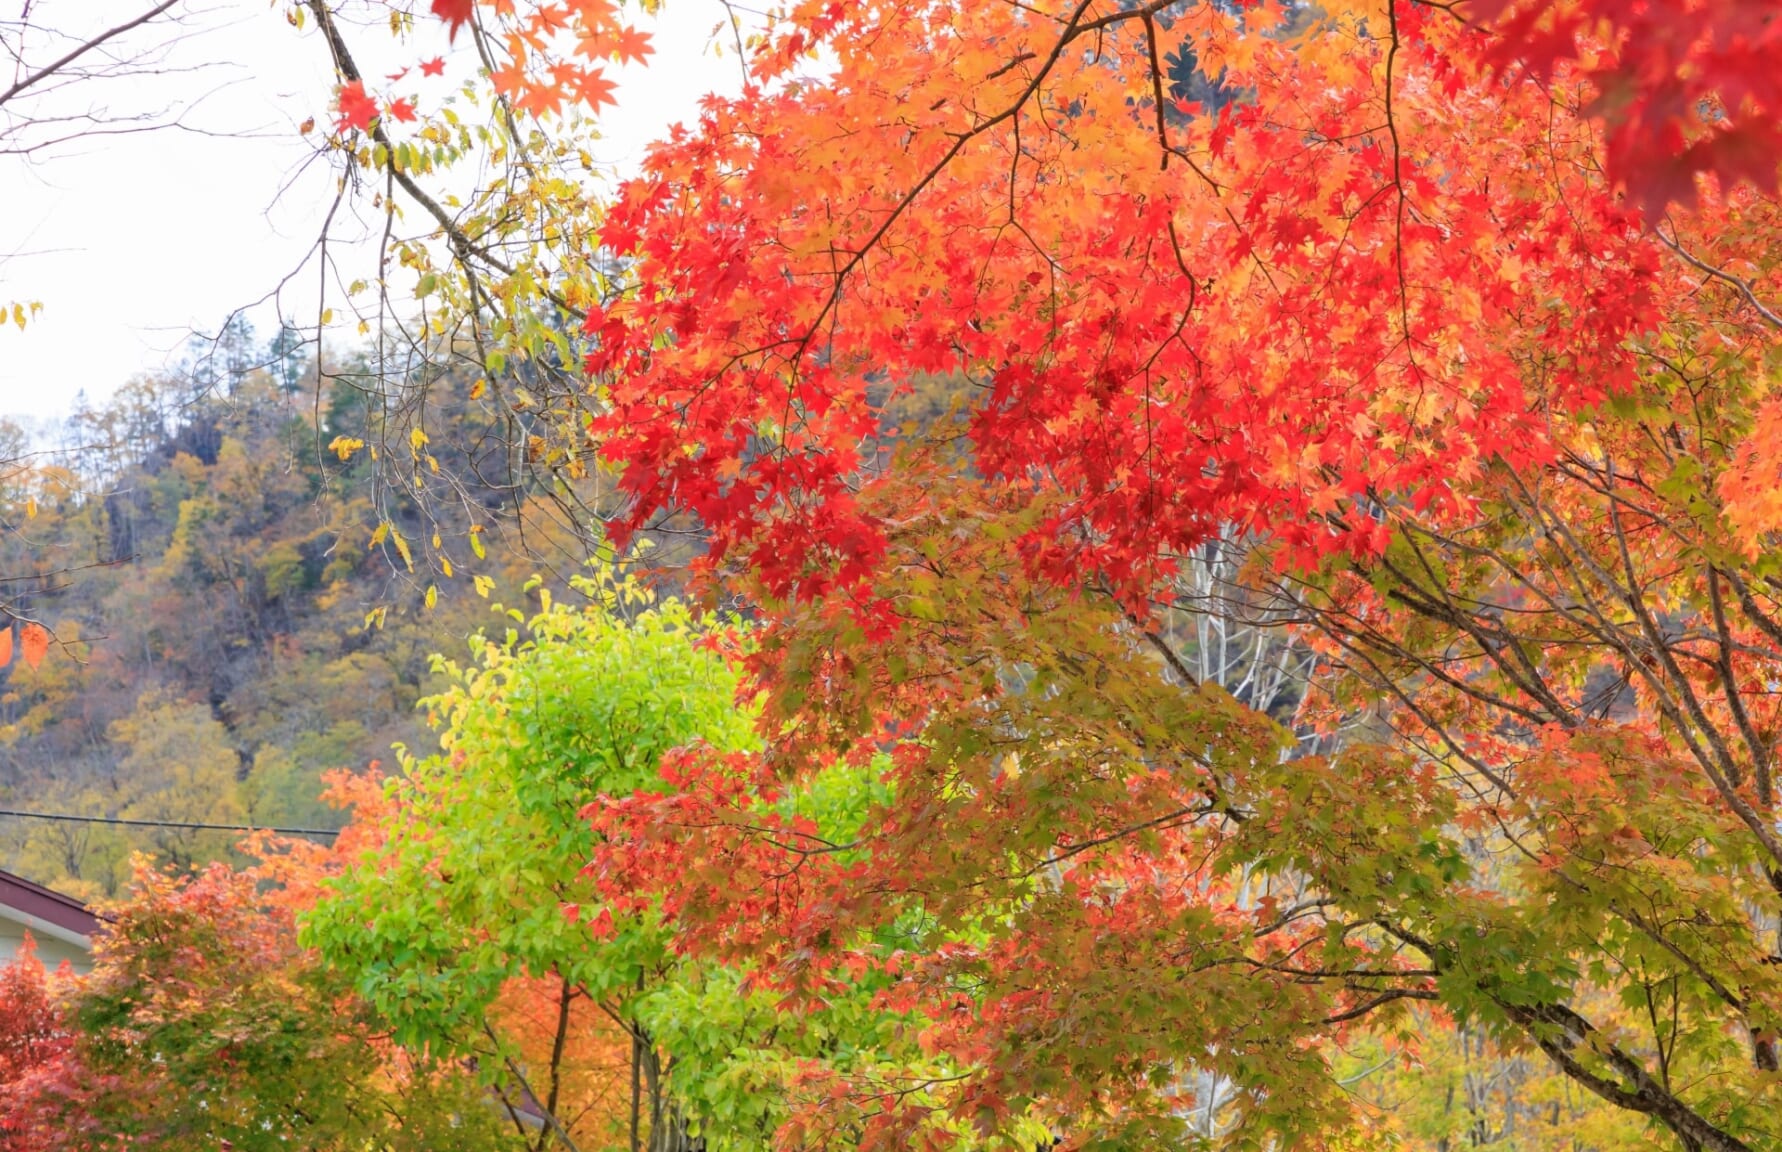 Hokkaido trees in Autumn